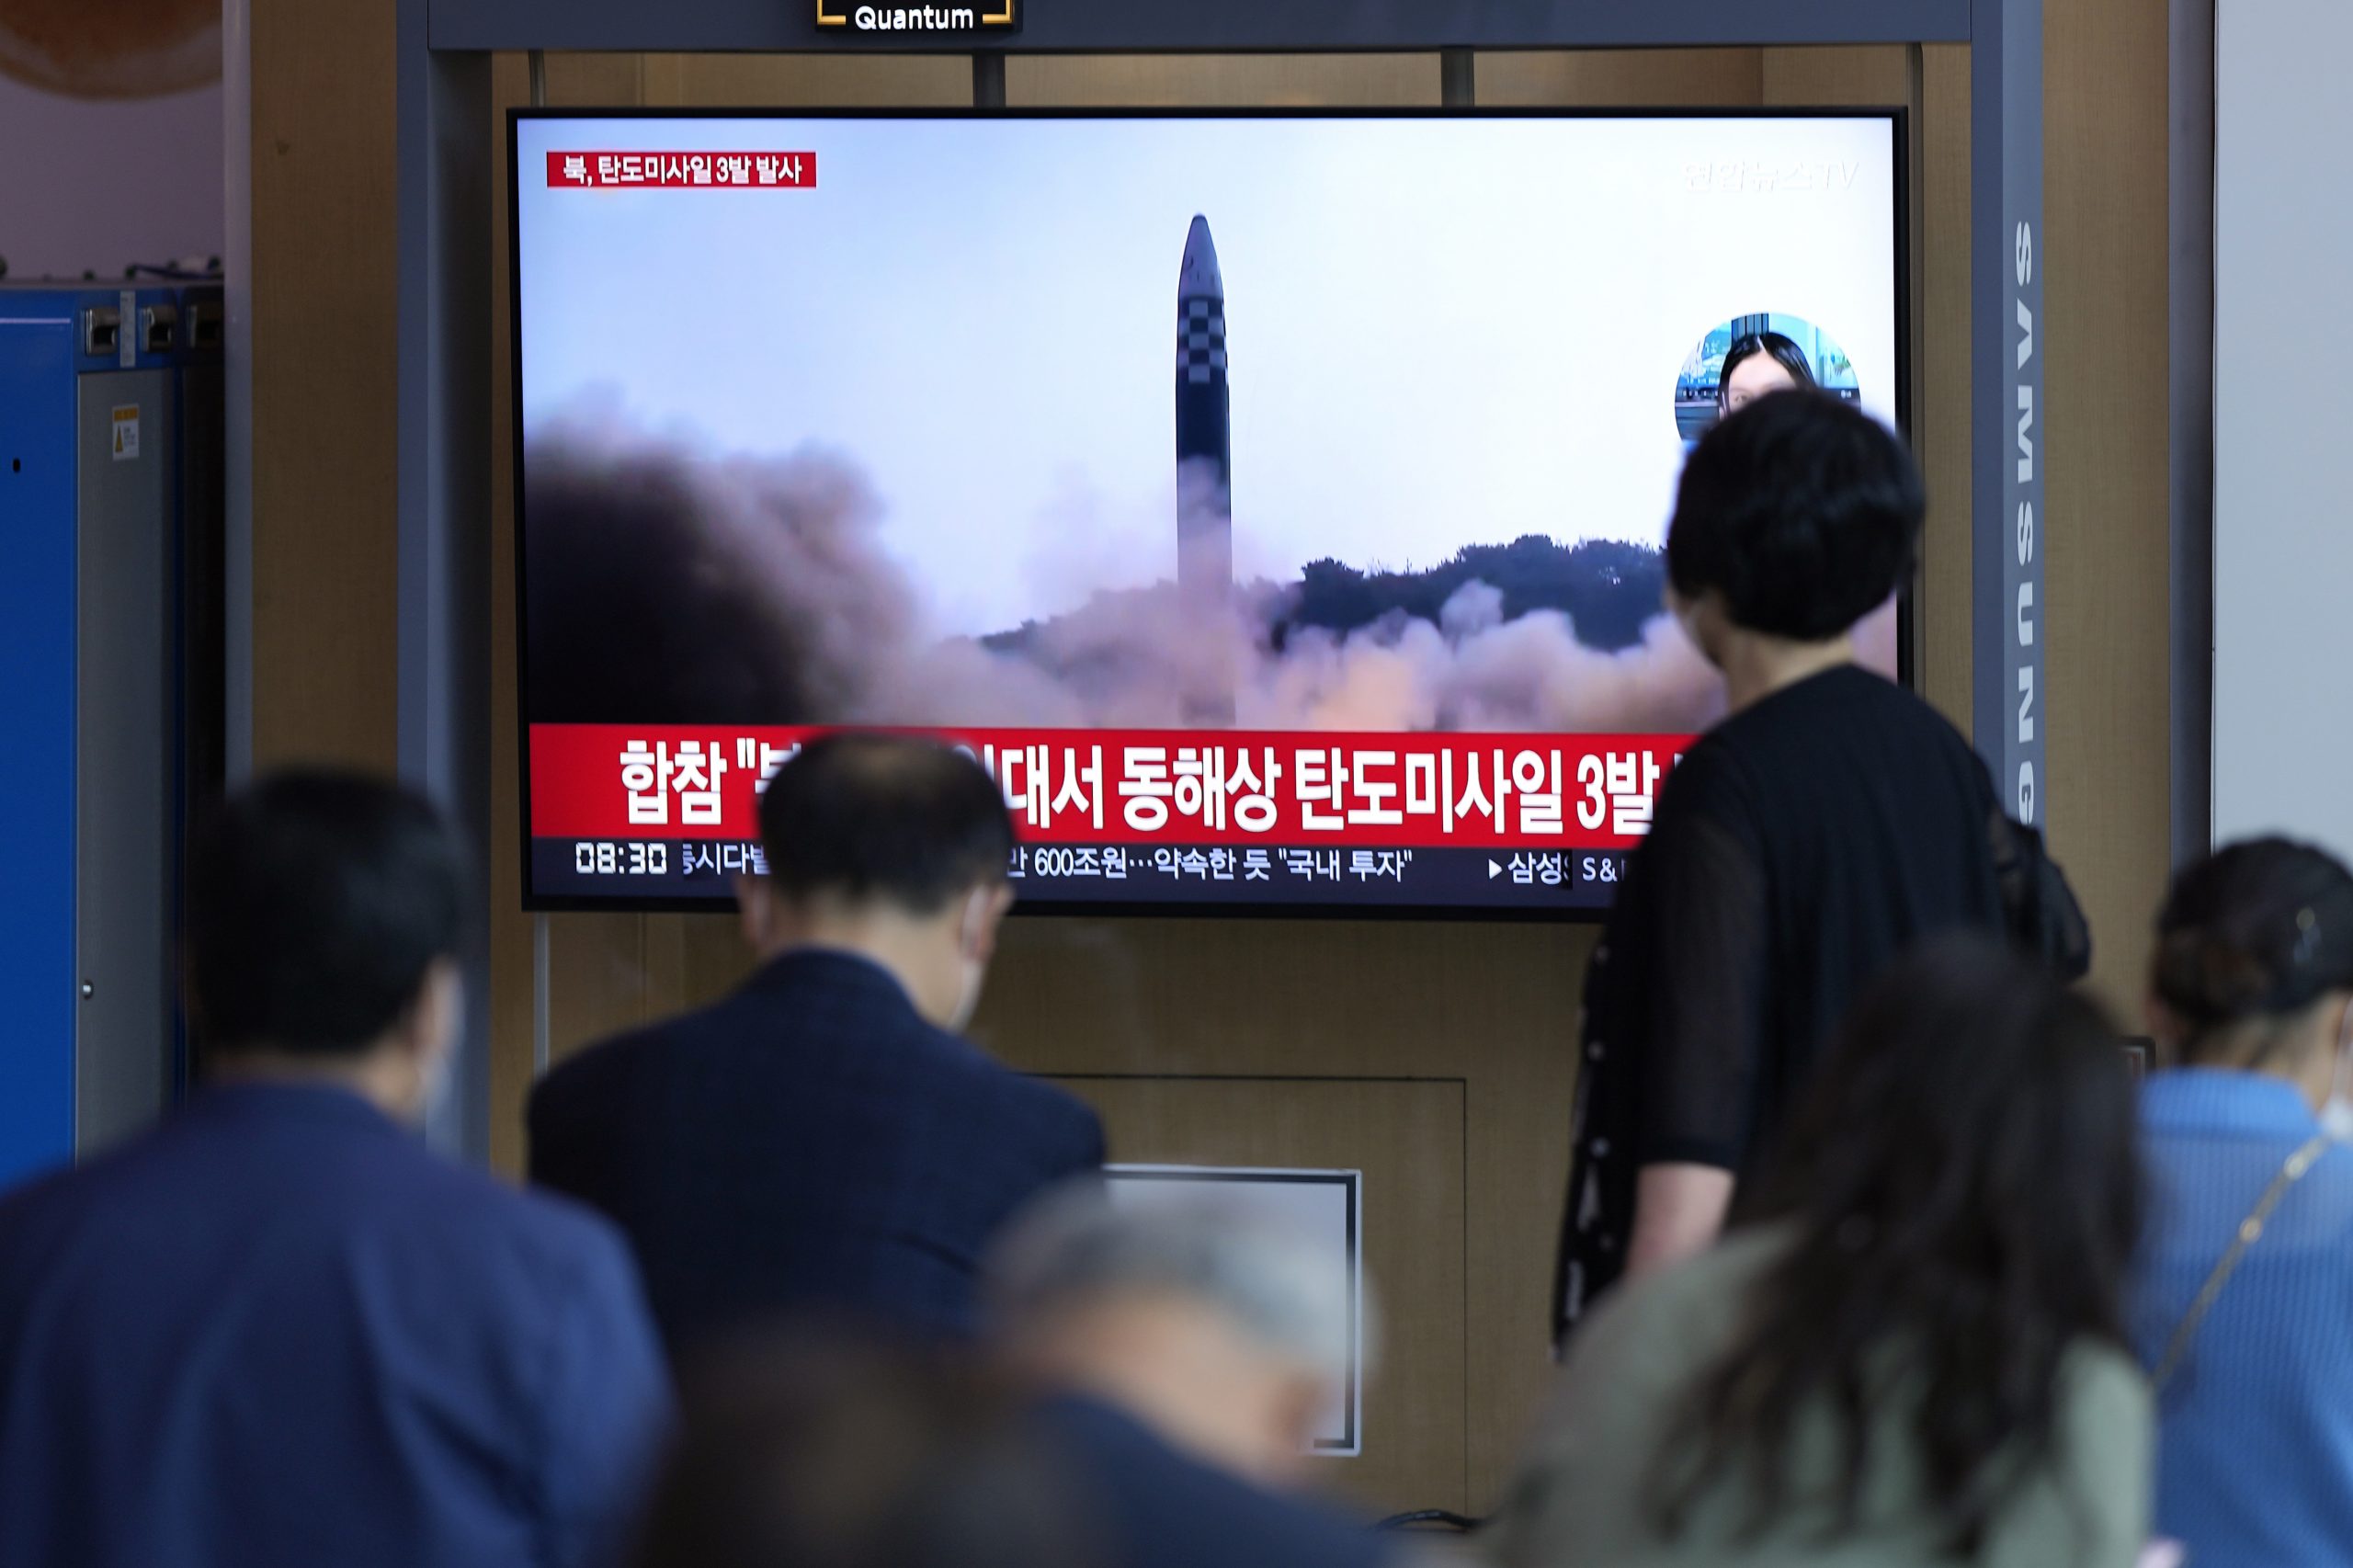  美国谴责朝鲜最新导弹试射 吁进行对话